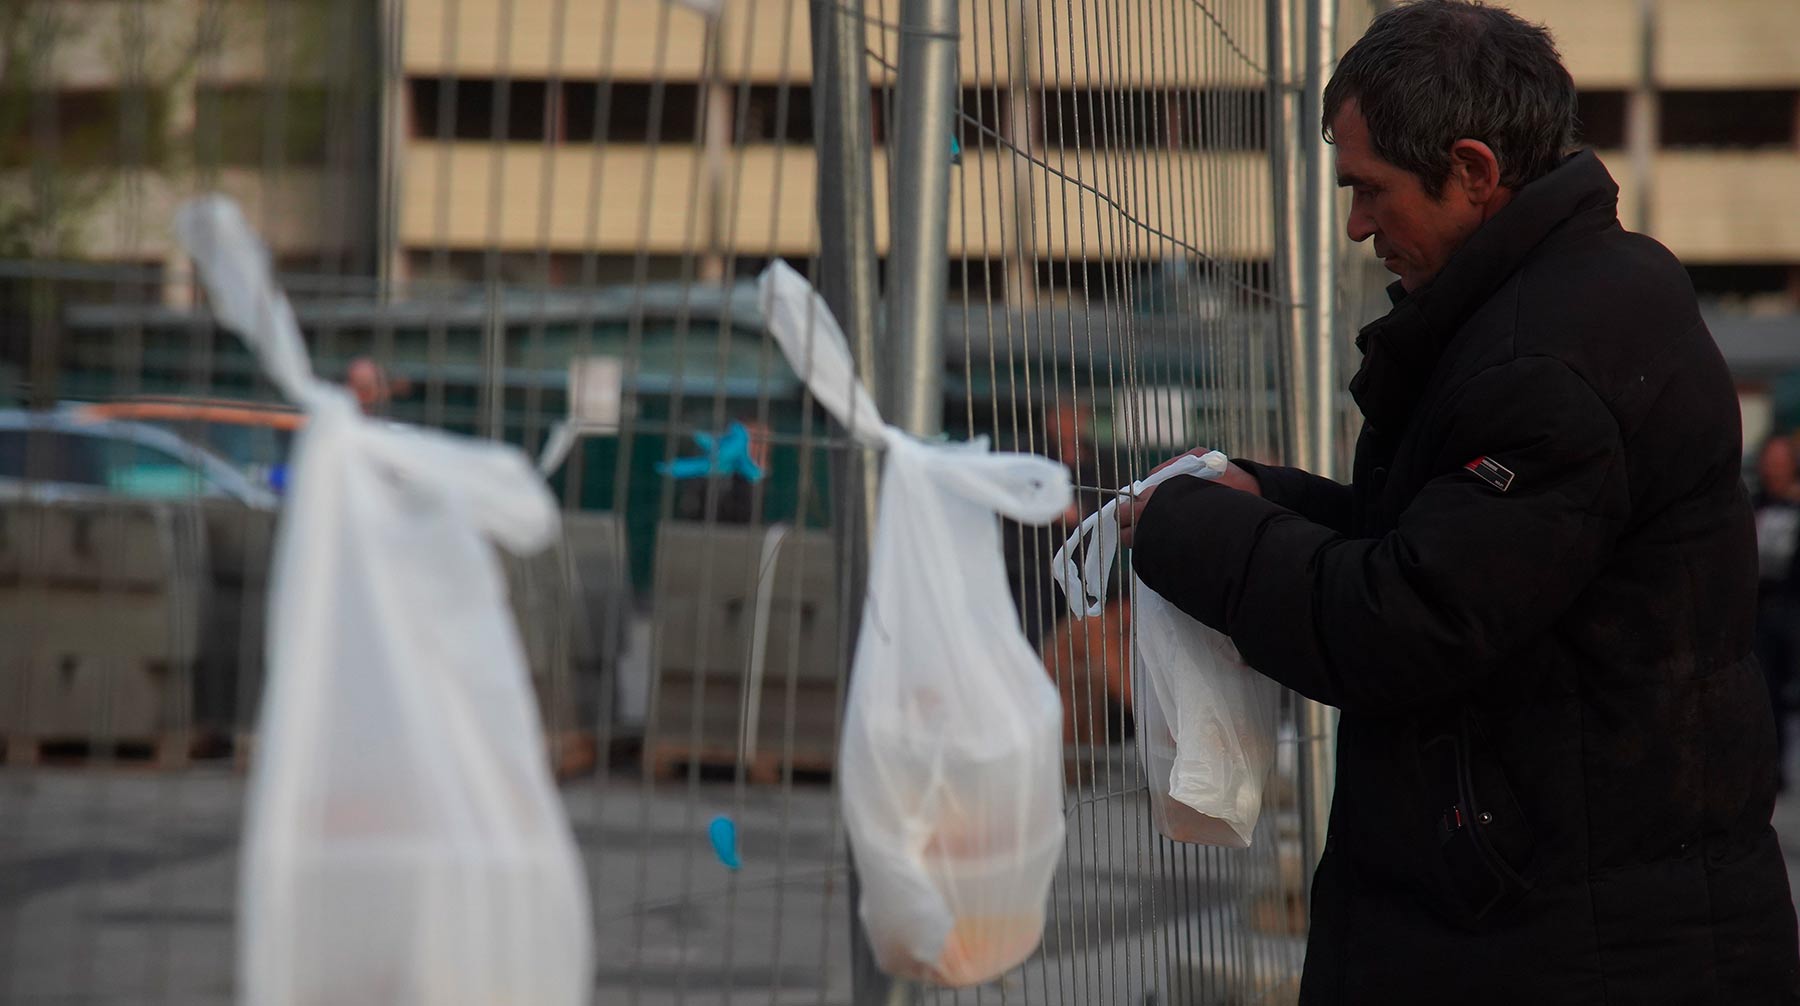 В организации «Небомживы» ранее допустили вспышку смертности среди бездомных в столице Фото: © АГН Москва / Александр Авилов